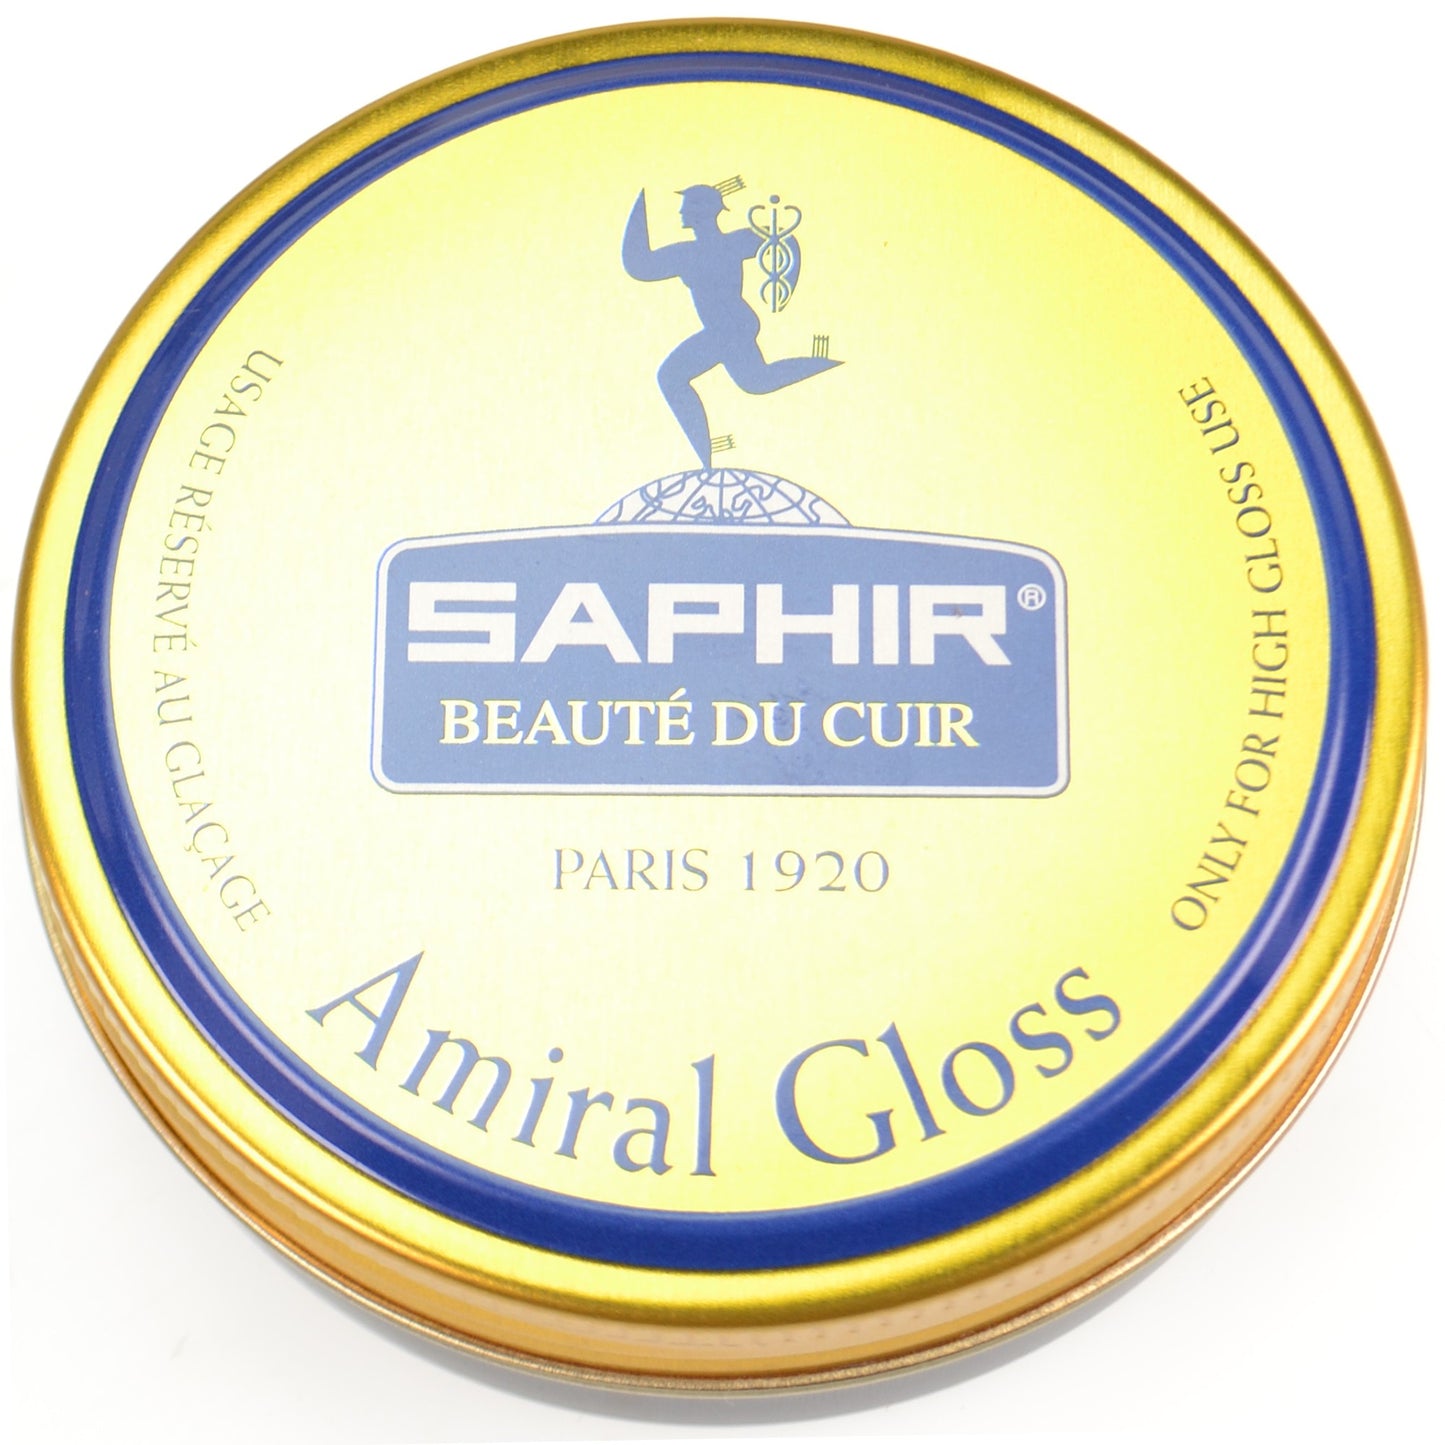 Saphir Amiral Mirror Gloss Shoe Polish - 50ml